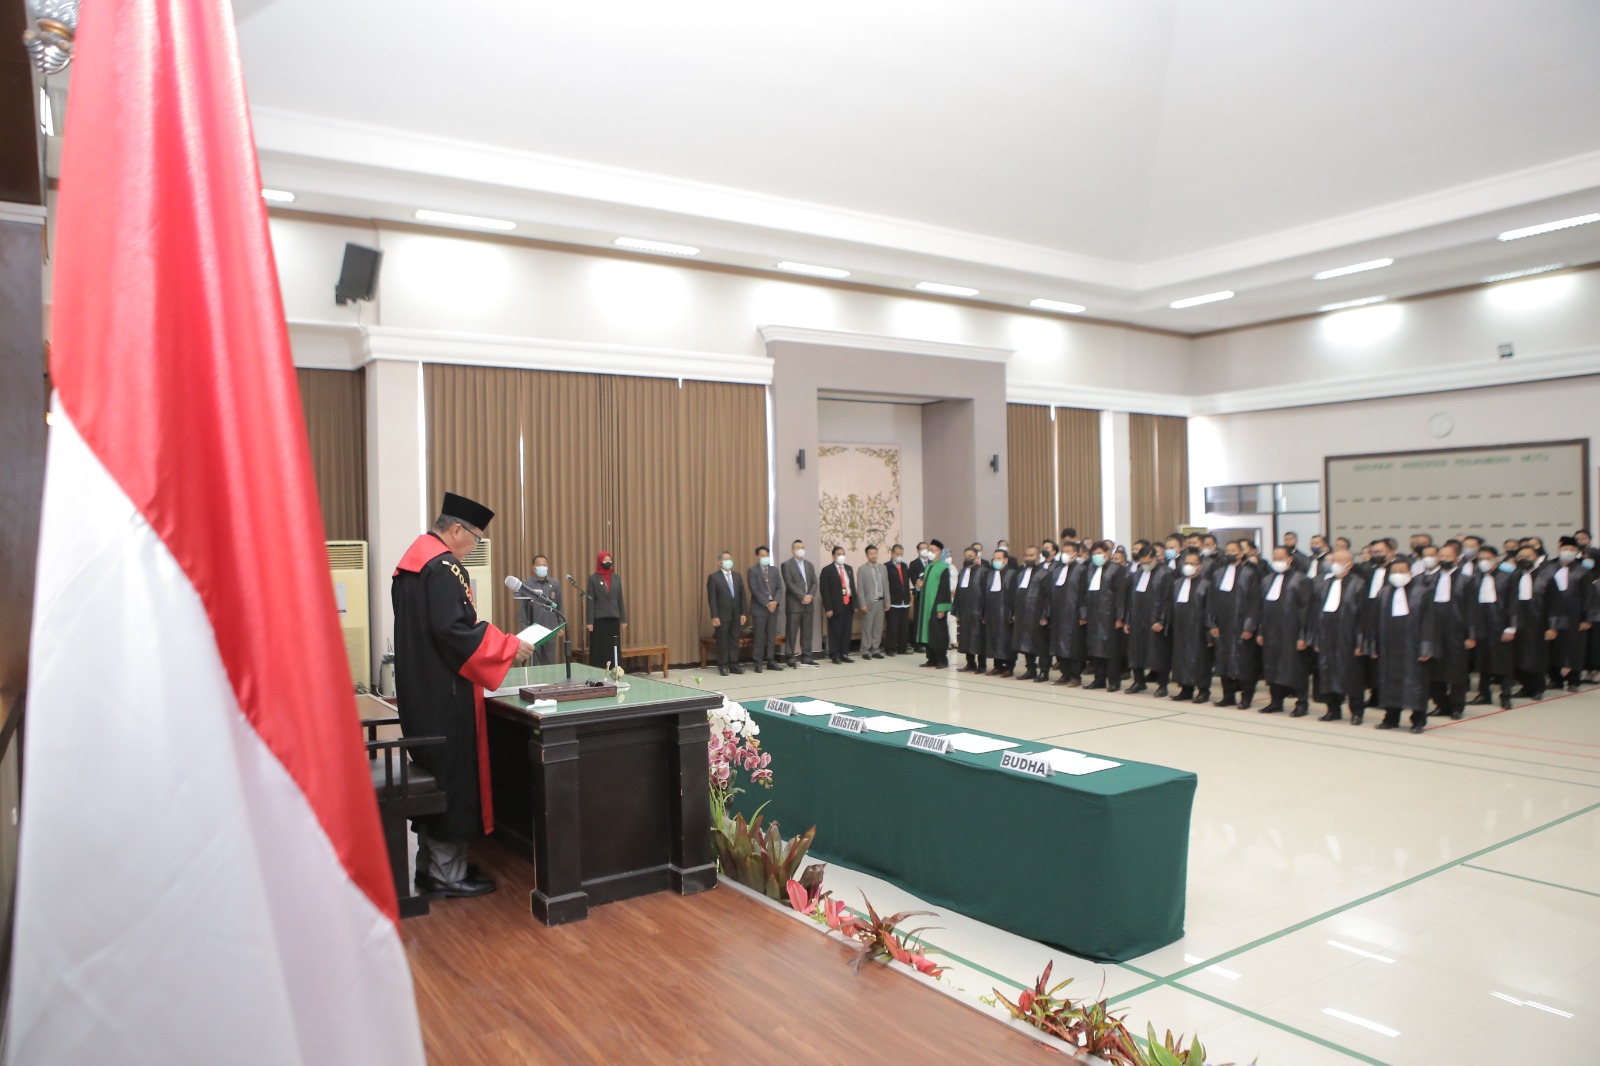 Pengangkatan dan Pelantikan Sumpah Advokat DPC Malang Raya & Banyuwangi Raya, di Hotel Empire Palace, Surabaya - 14 Maret 2023. Sebanyak 86 peserta